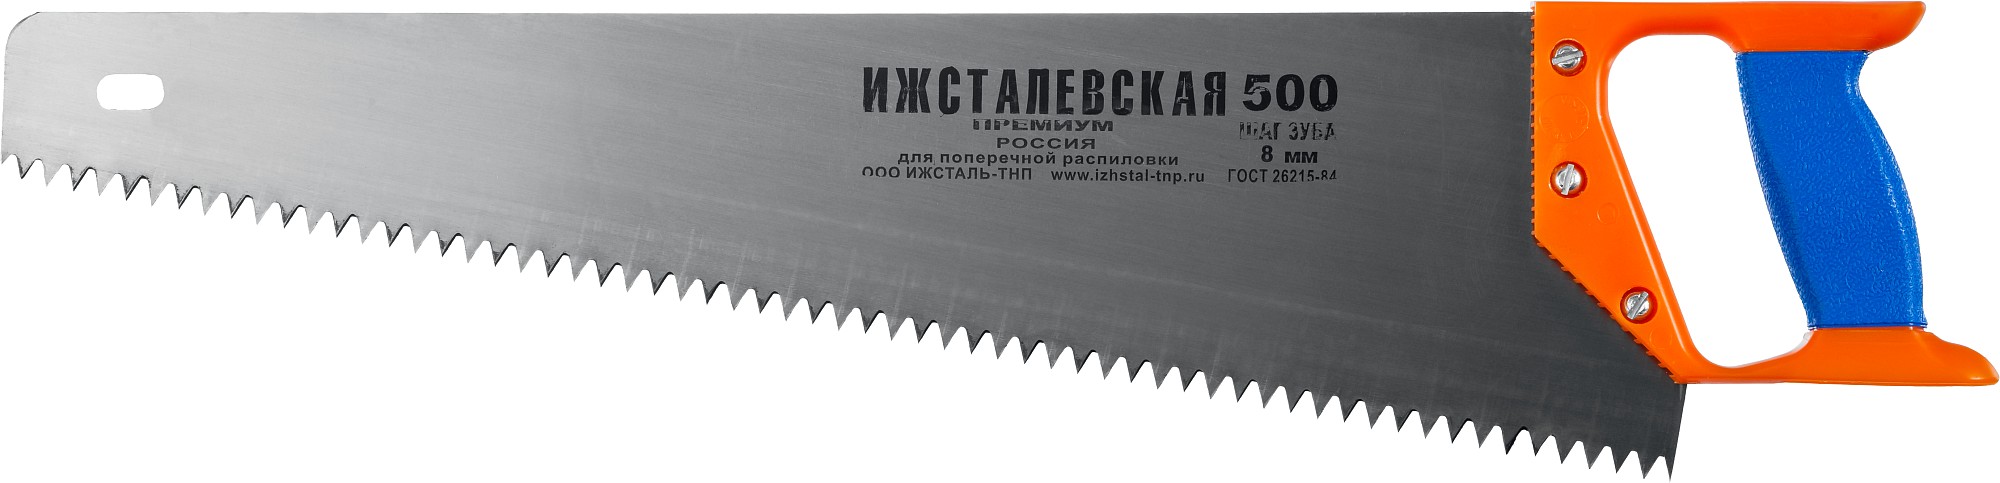 Ижсталь - ТНП Премиум 500 мм, ножовка по дереву (1520-50-08)